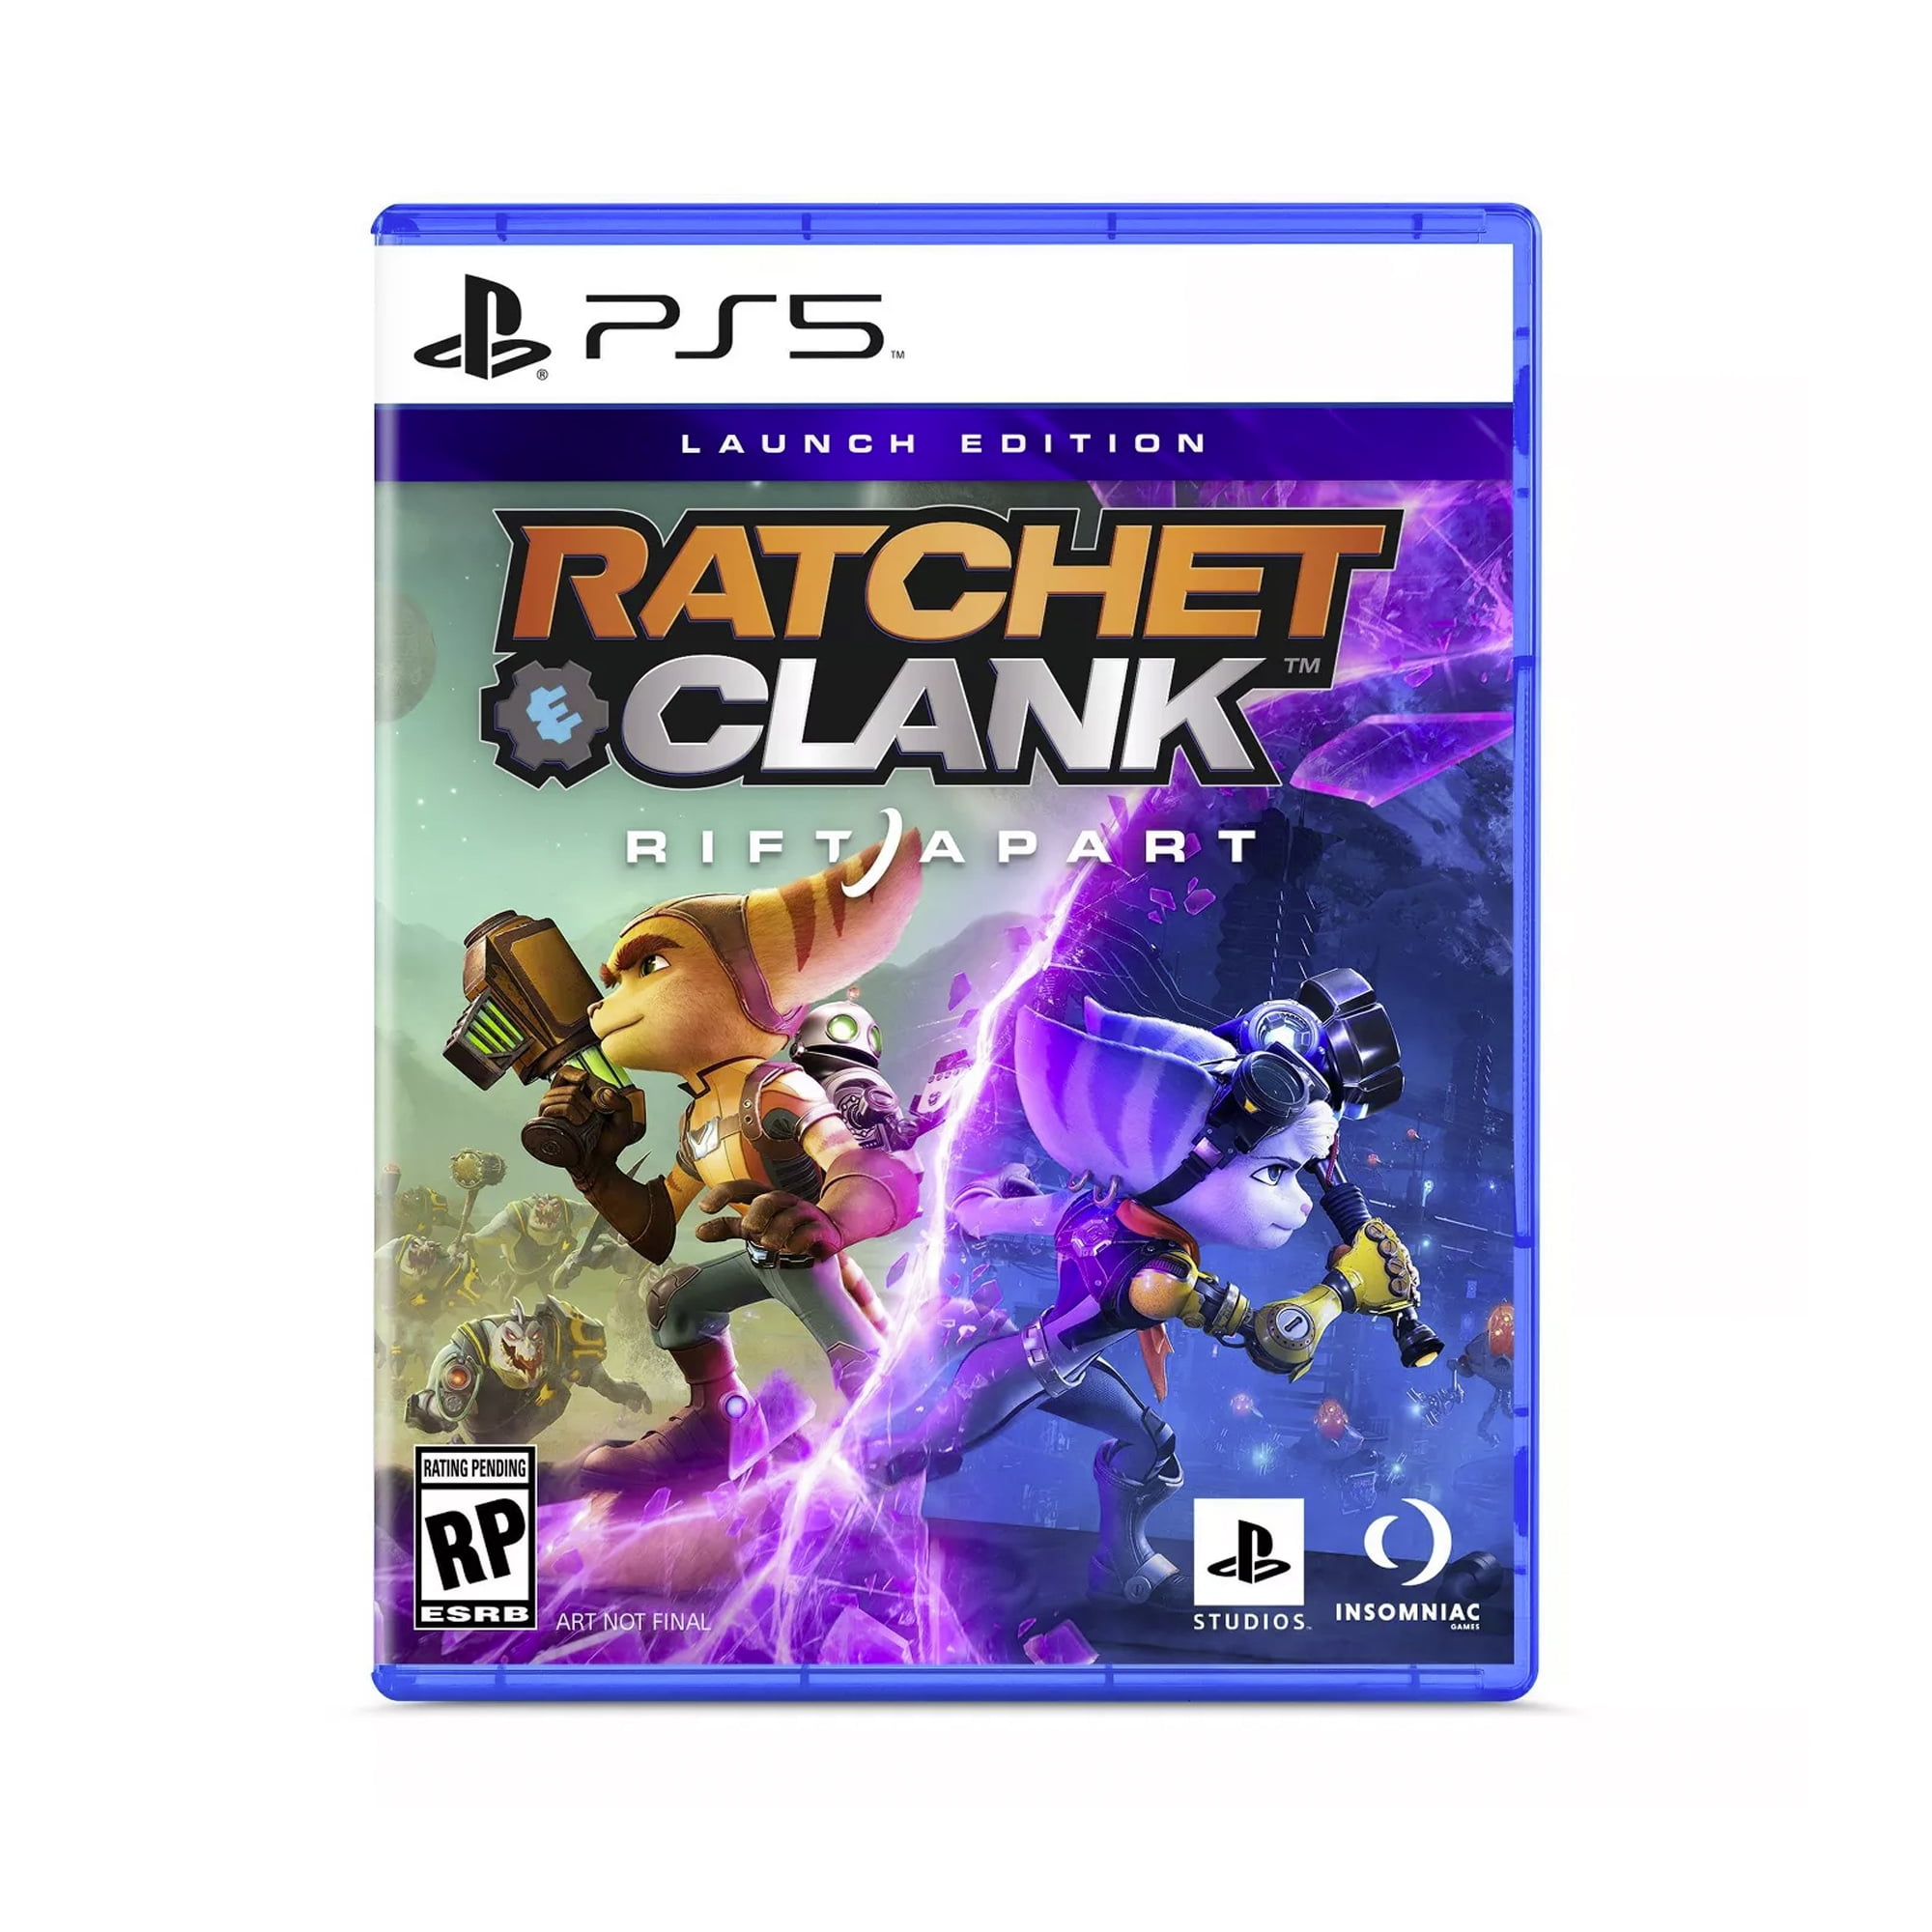 Jogo PS4 - Ratchet e Clank Hits - Playstation Hits - Sony